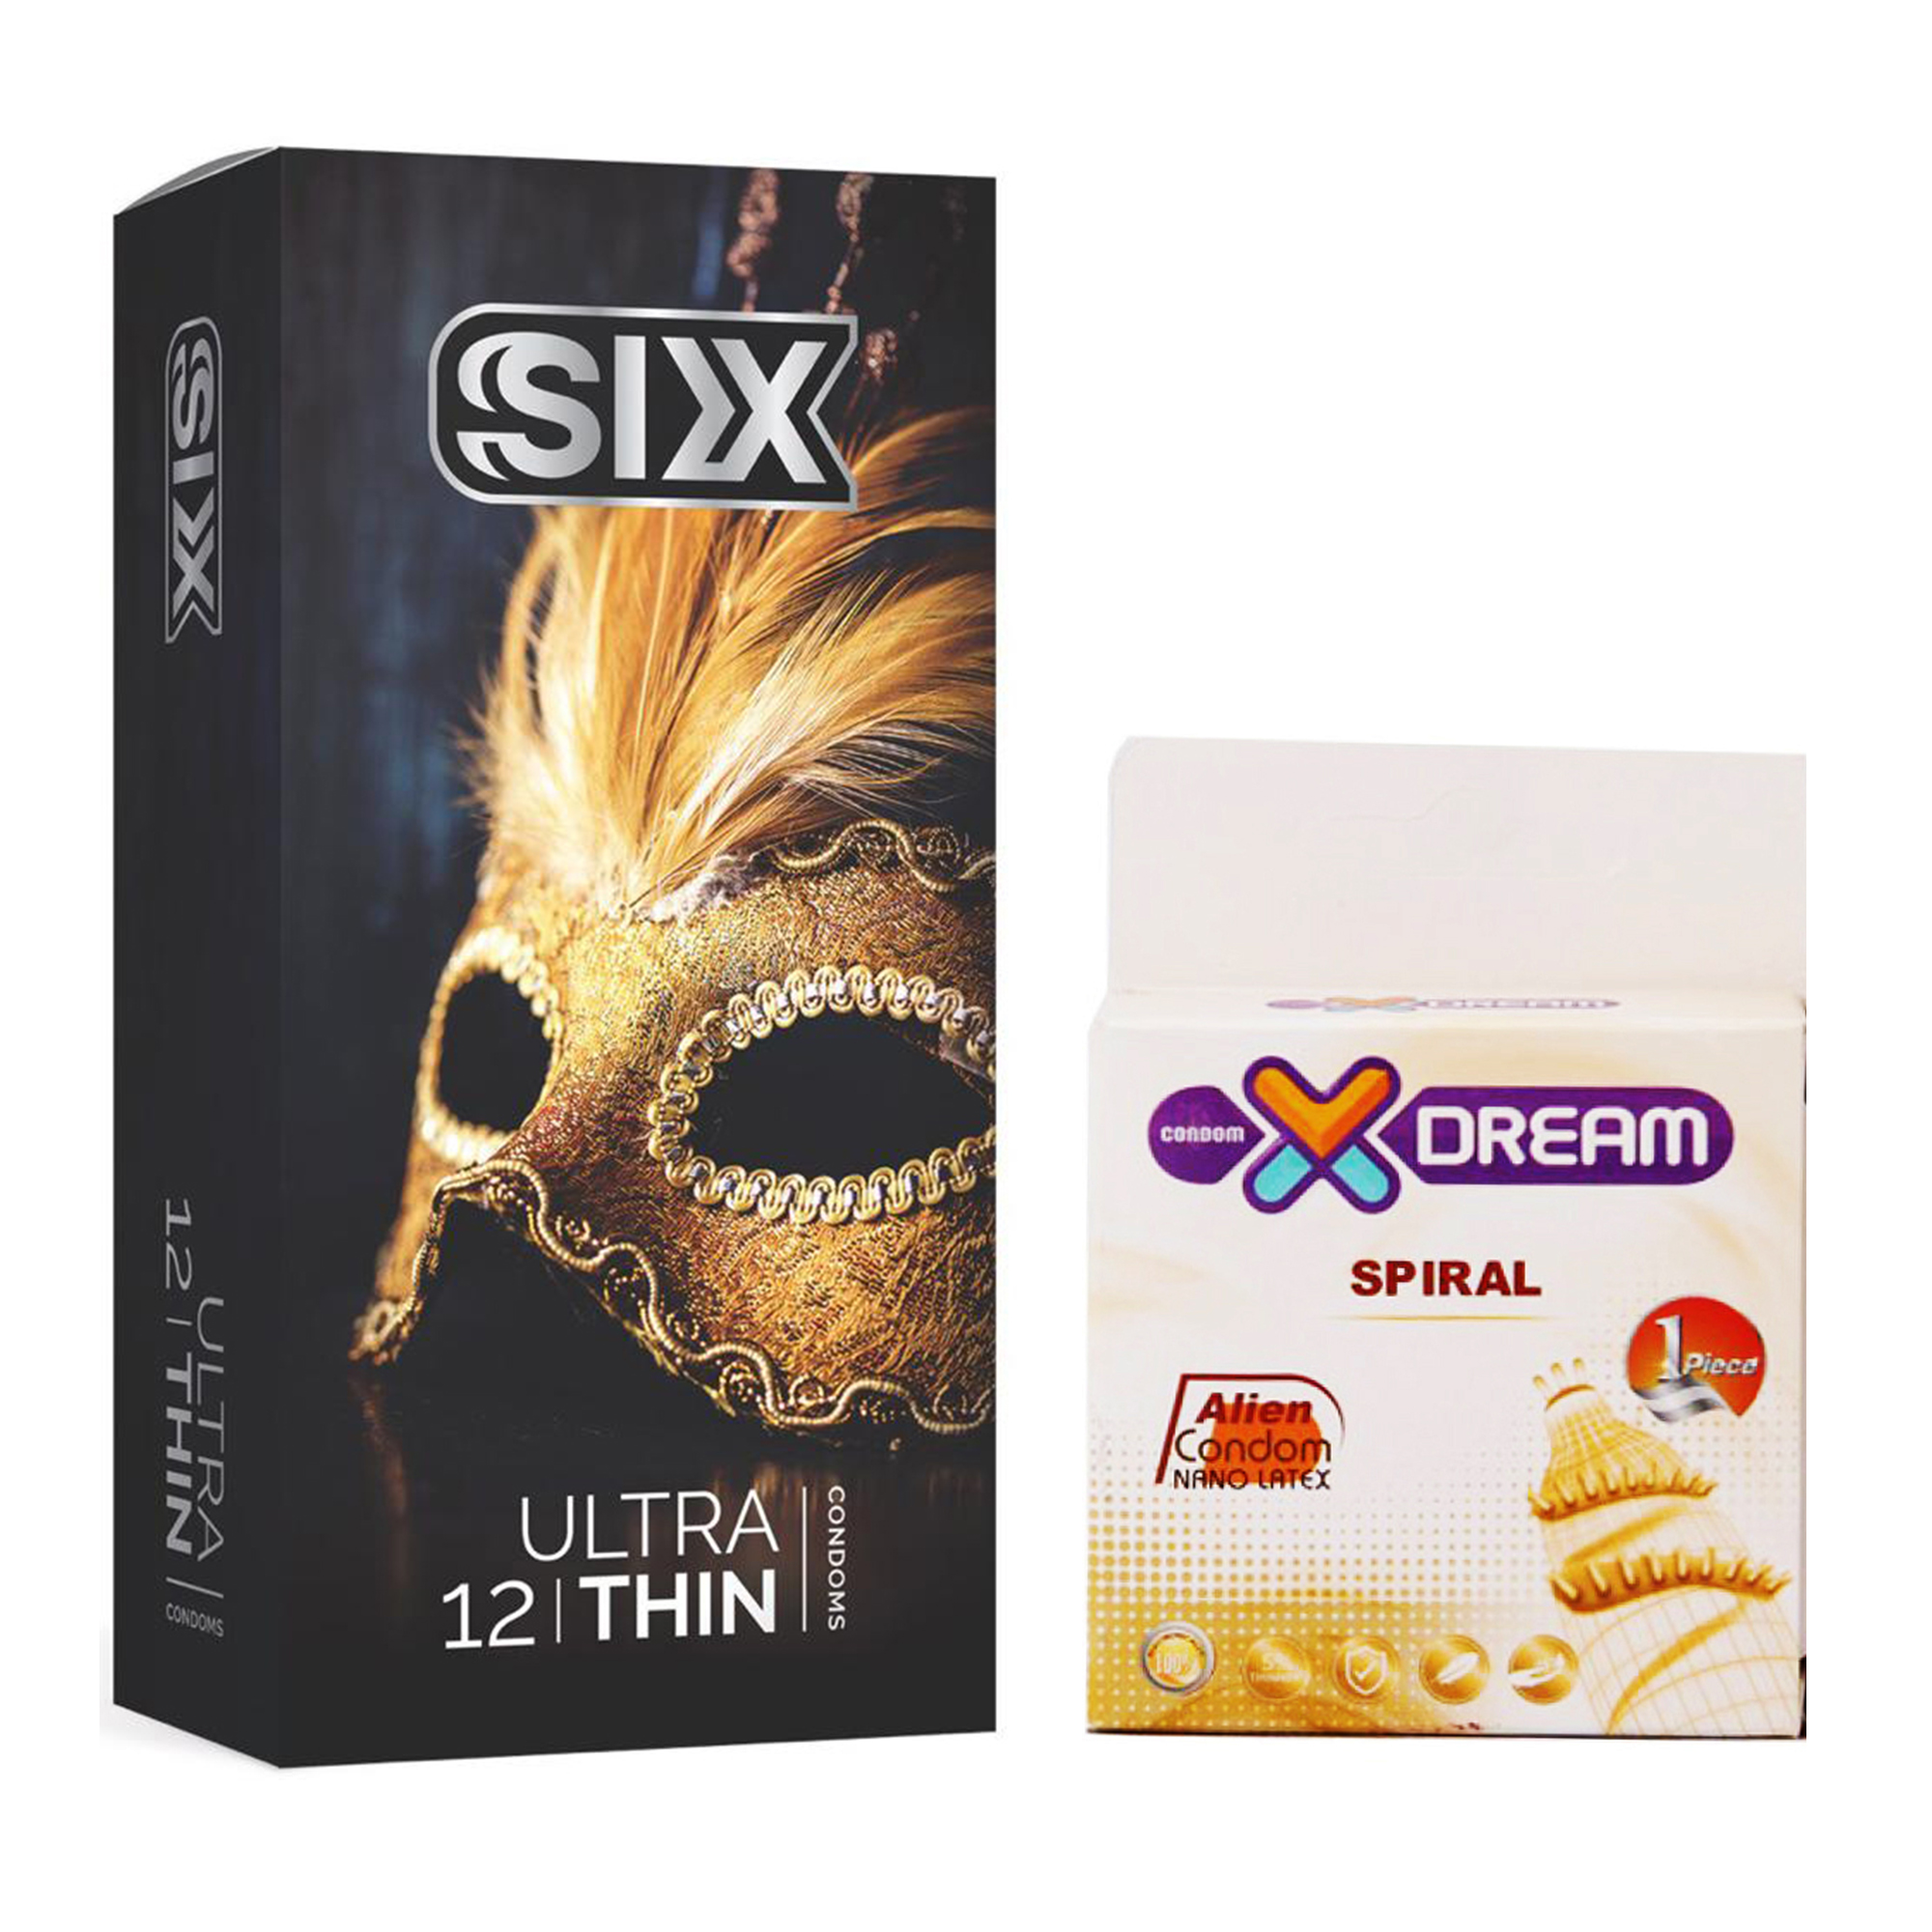 کاندوم سیکس مدل Ultra Thin بسته 12 عددی به همراه کاندوم ایکس دریم مدل Spiral